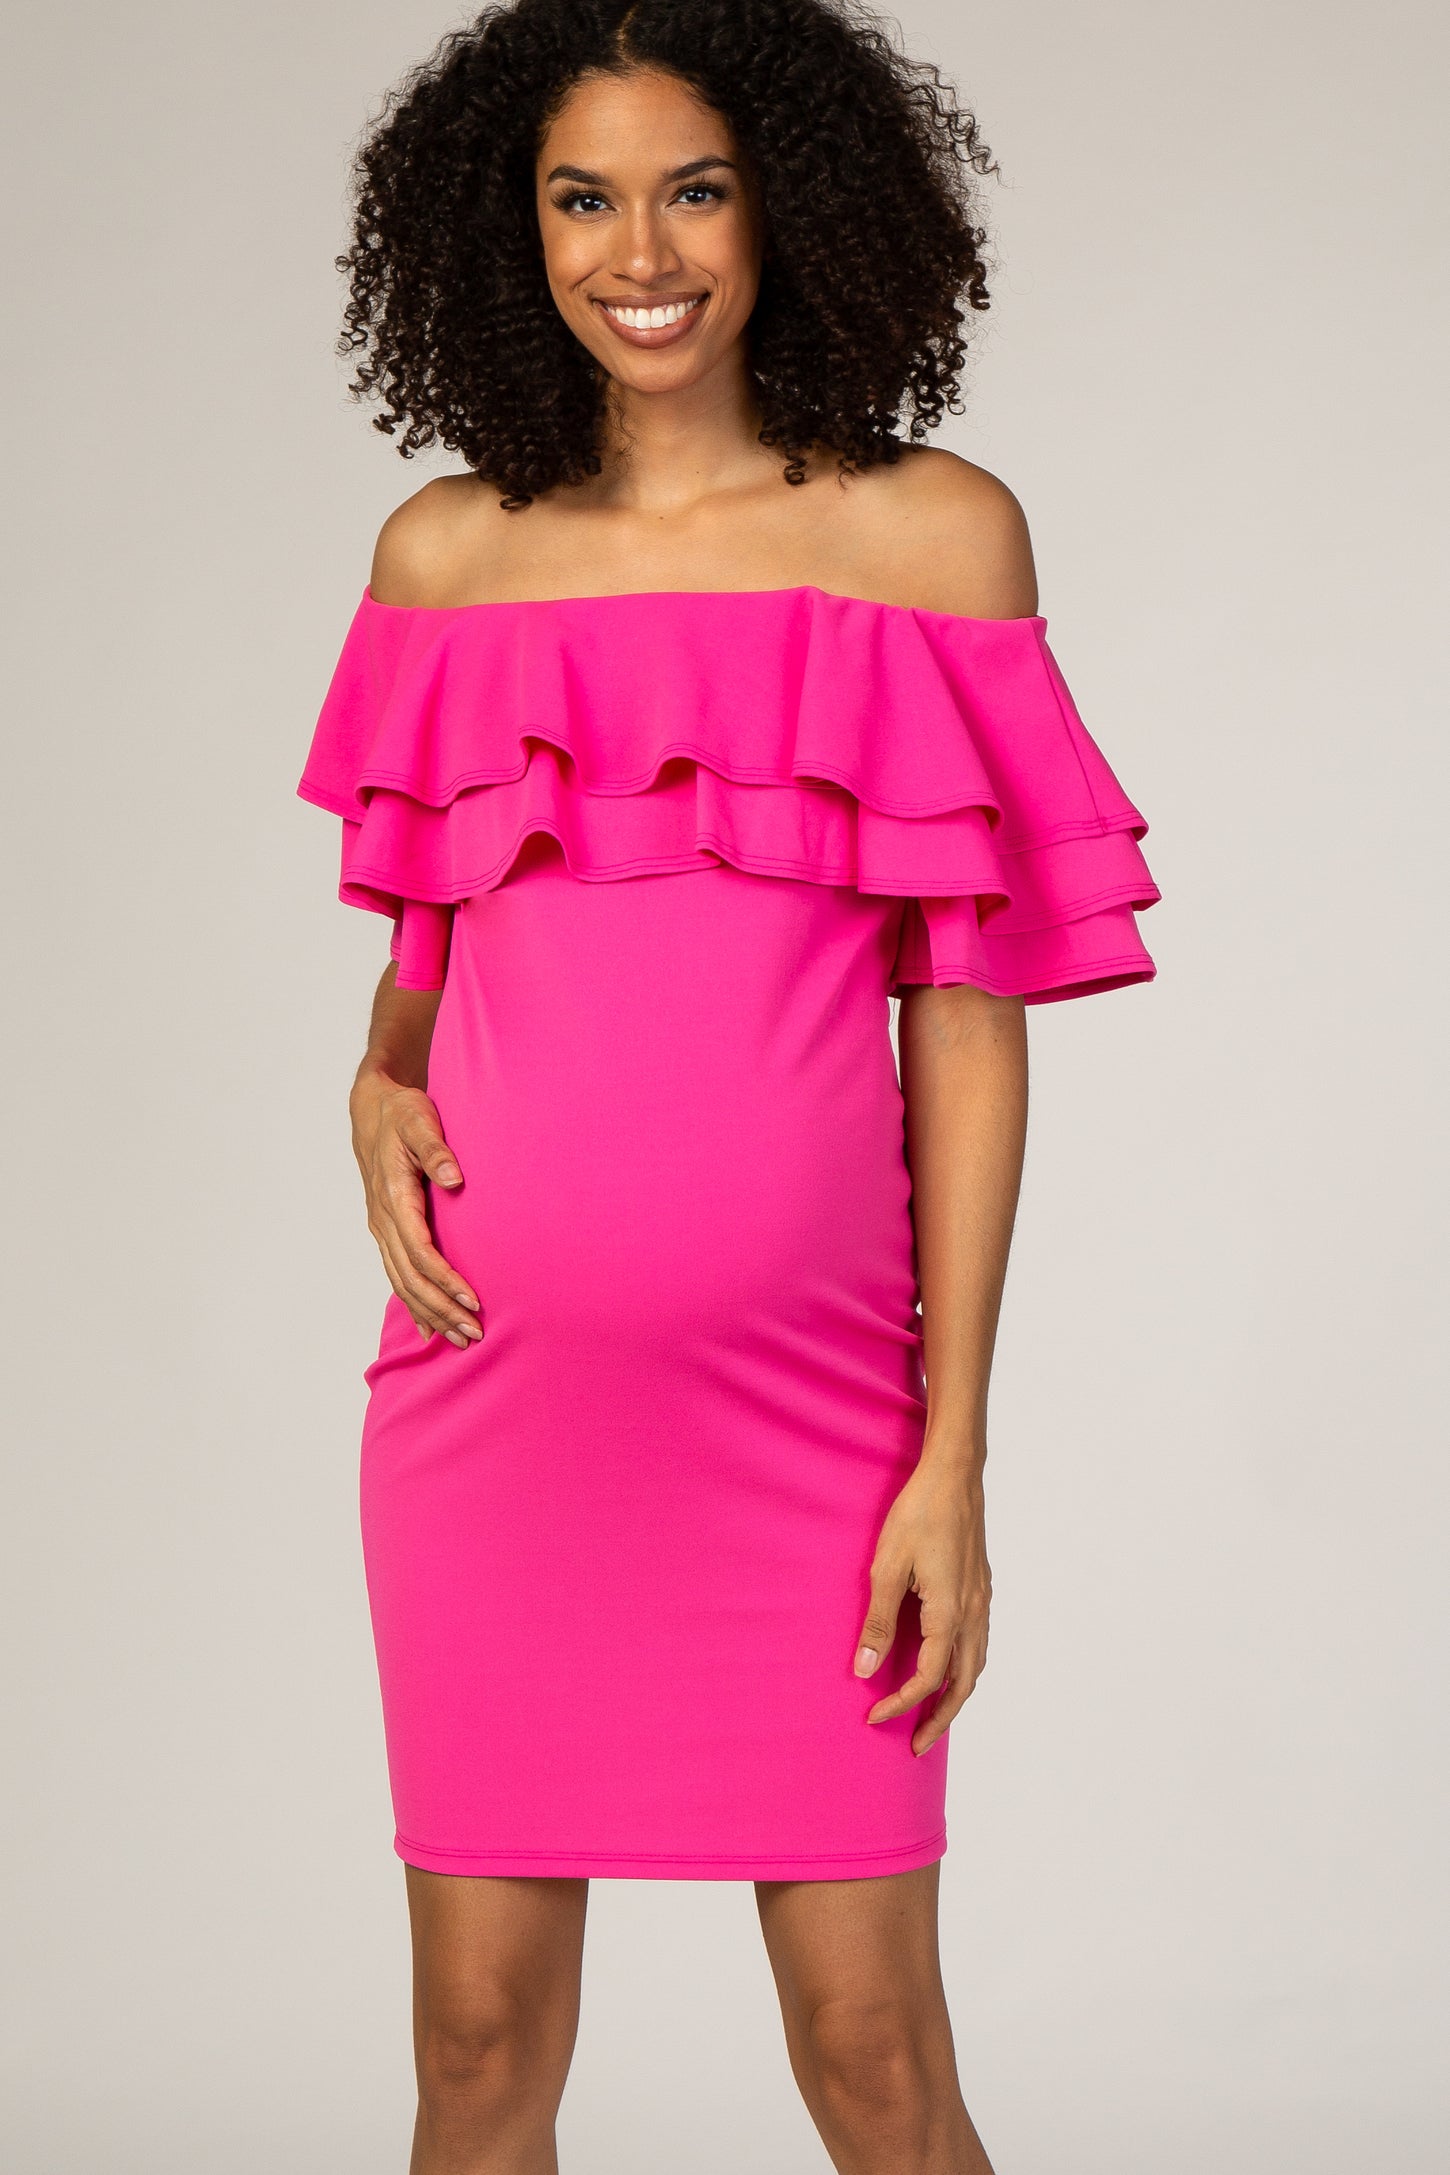 Pinkblush Fuchsia Layered Ruffle Off Shoulder Fitted Maternity Dress 